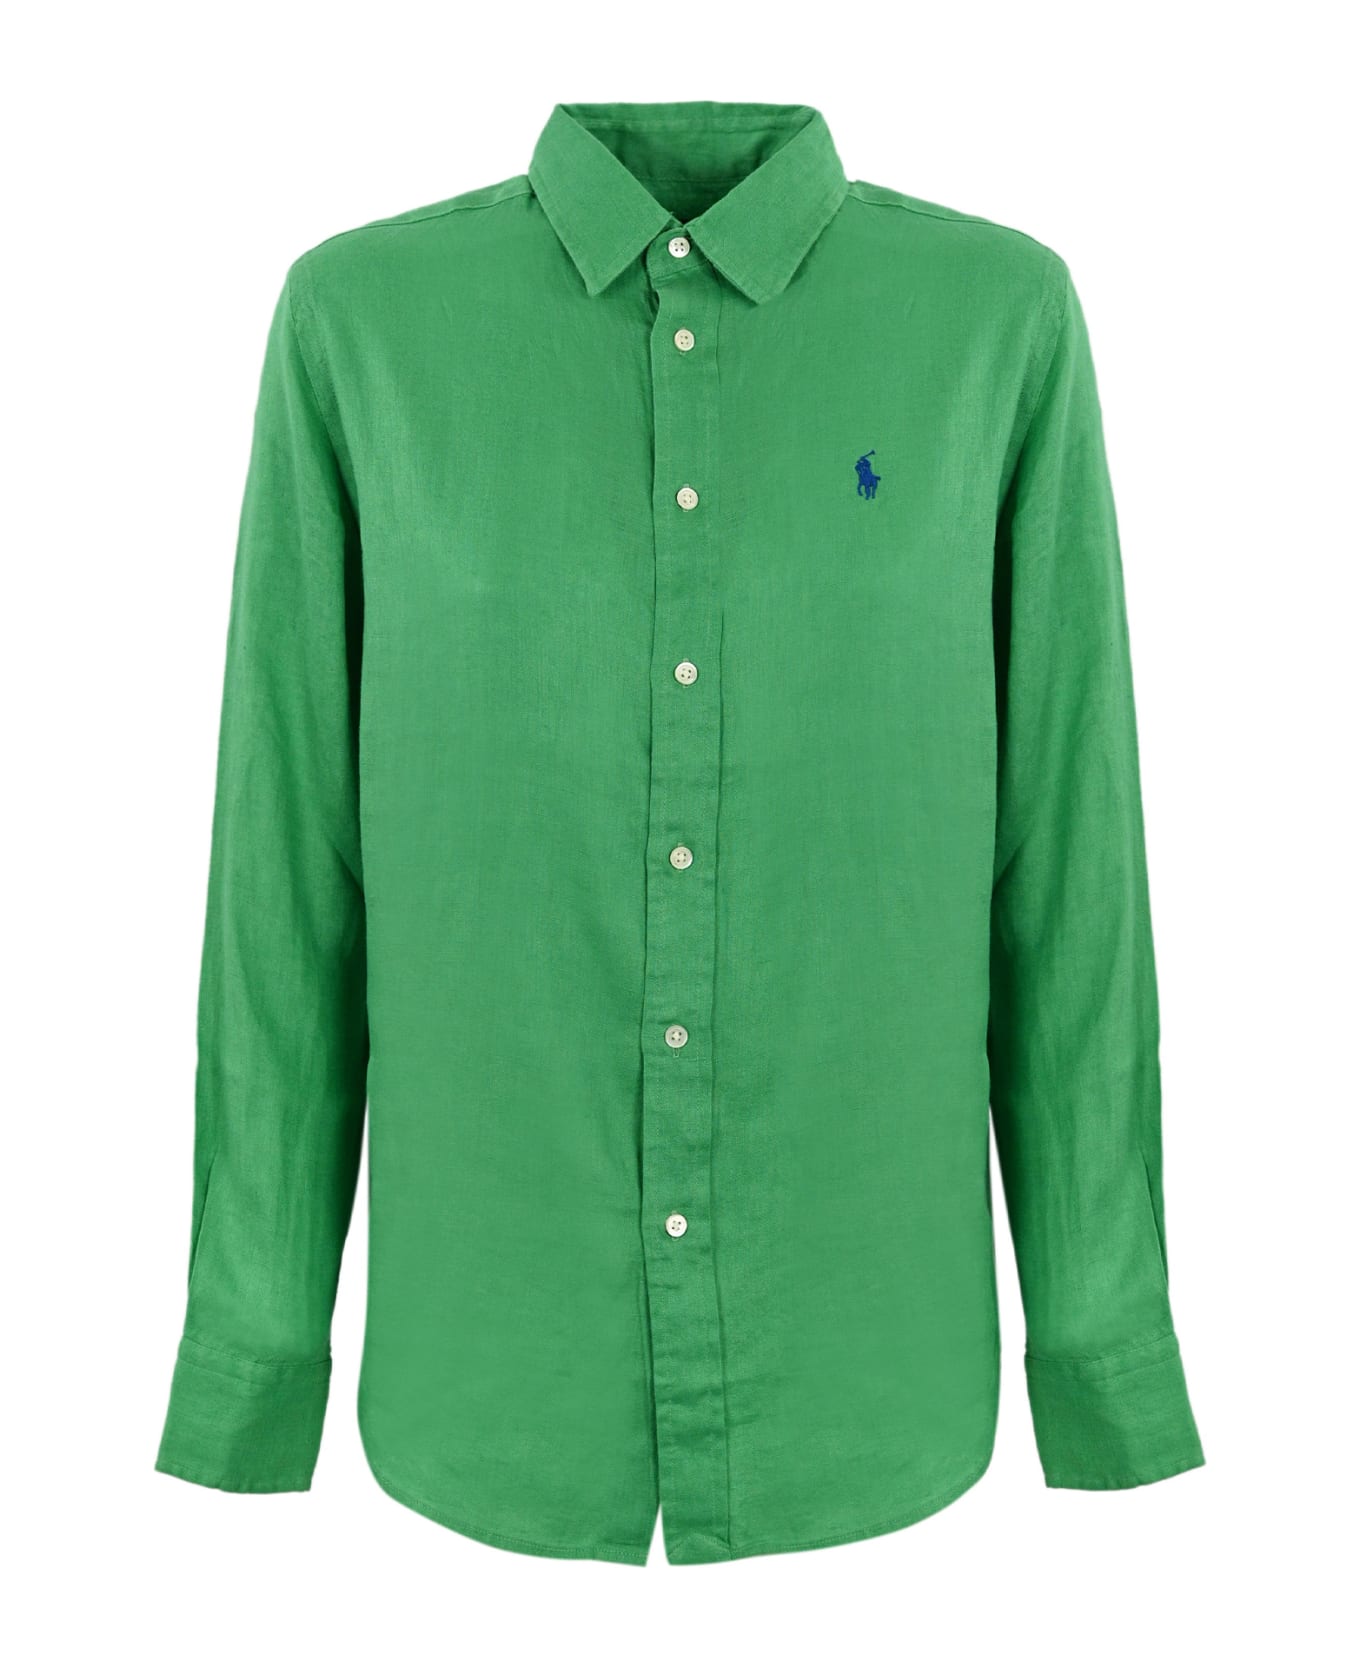 Polo Ralph Lauren Shirt - VINEYARD GREEN